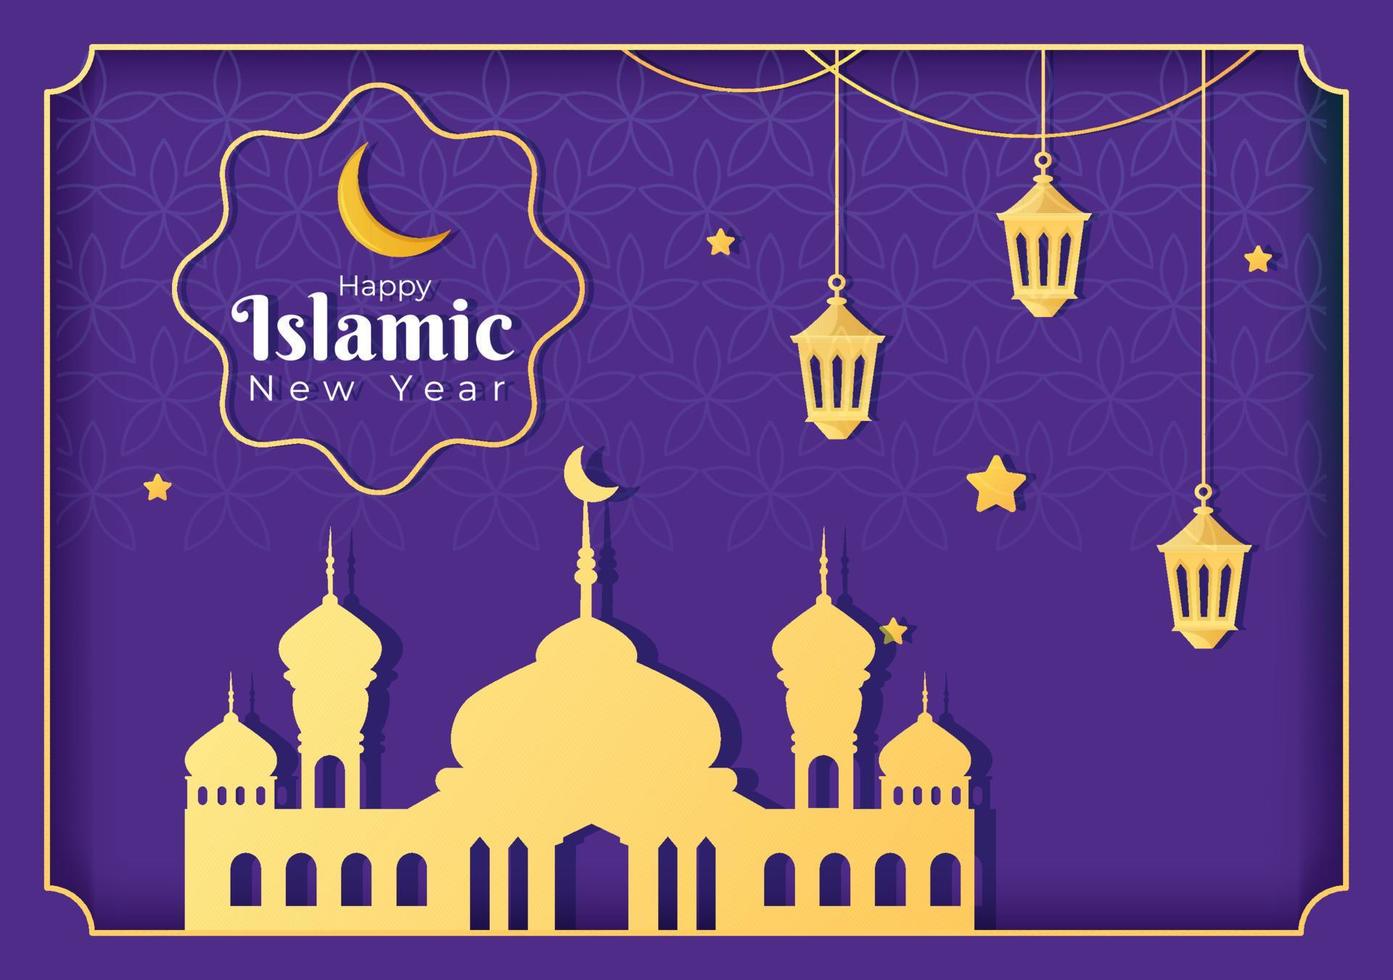 le jour du nouvel an islamique ou 1 muharram vector illustration de fond de famille musulmane célébrant peut être utilisé pour une carte de voeux ou une invitation